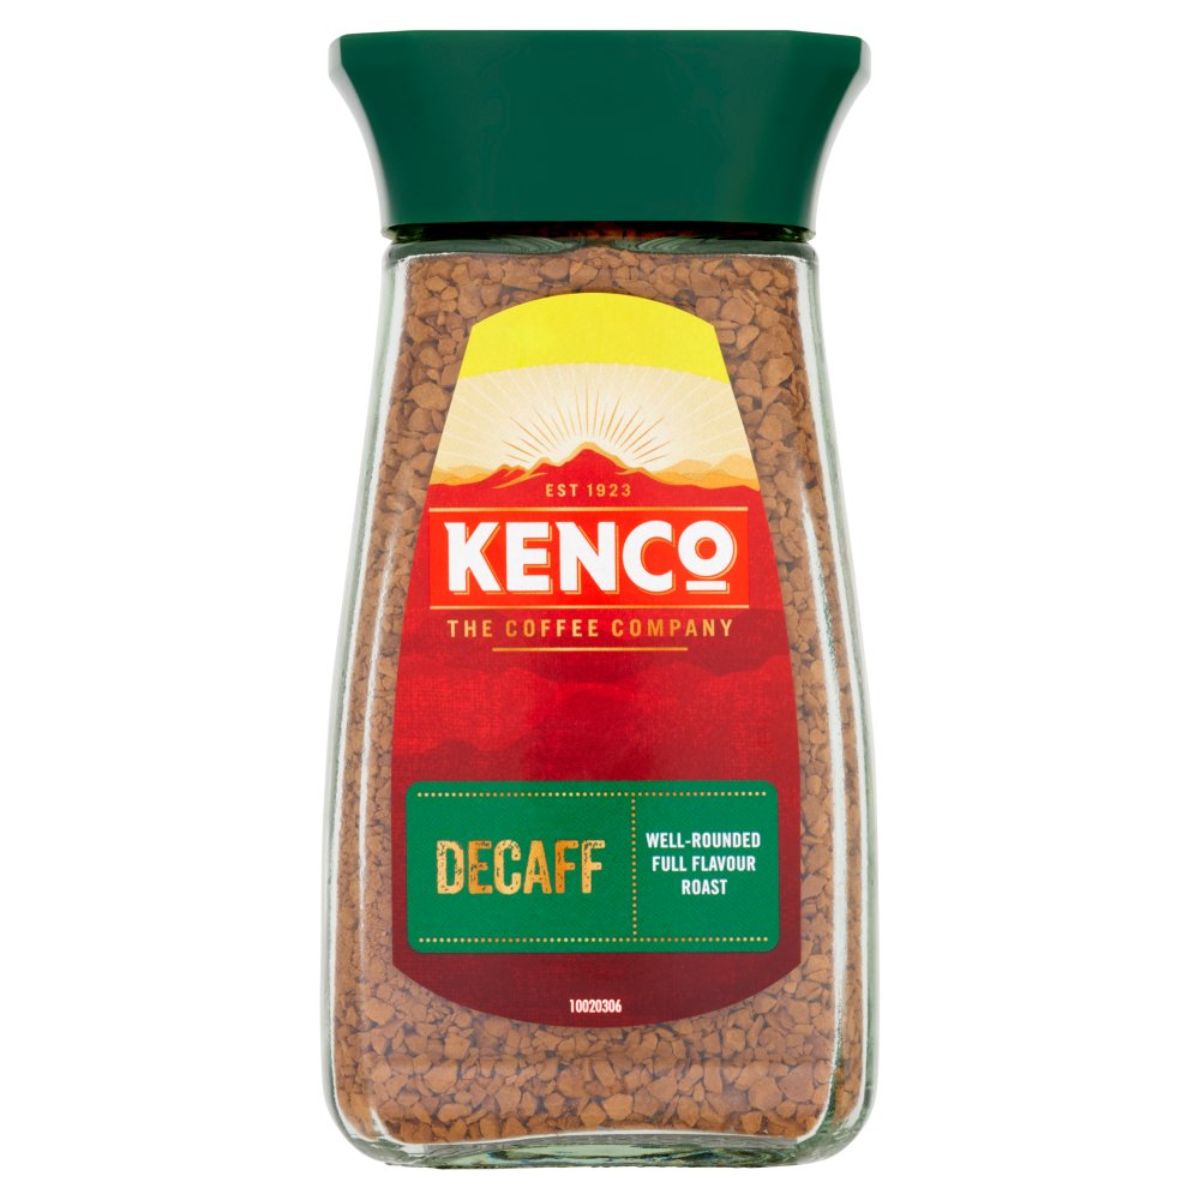 A jar of Kenco - Decaff Instant Coffee - 100g.